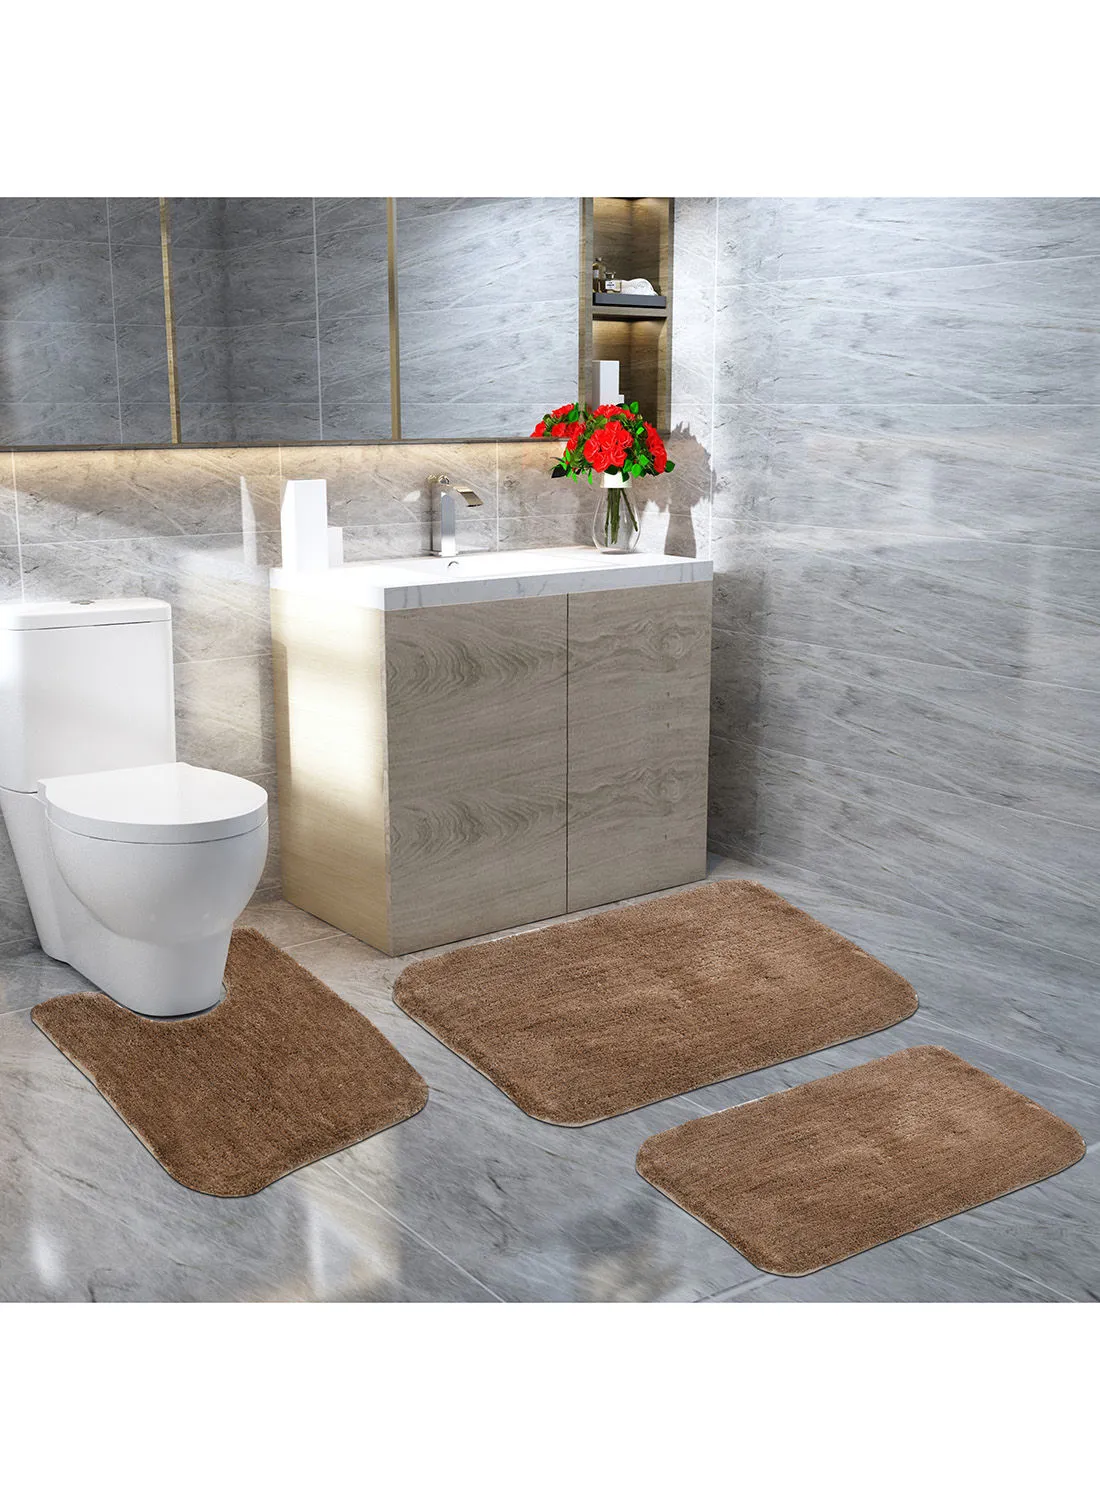 Xtromac Bath Mat Xtromac - 60X90 Cm - 100% Polyester - Brown Color - Bathroom Mat Economical 3 Piece